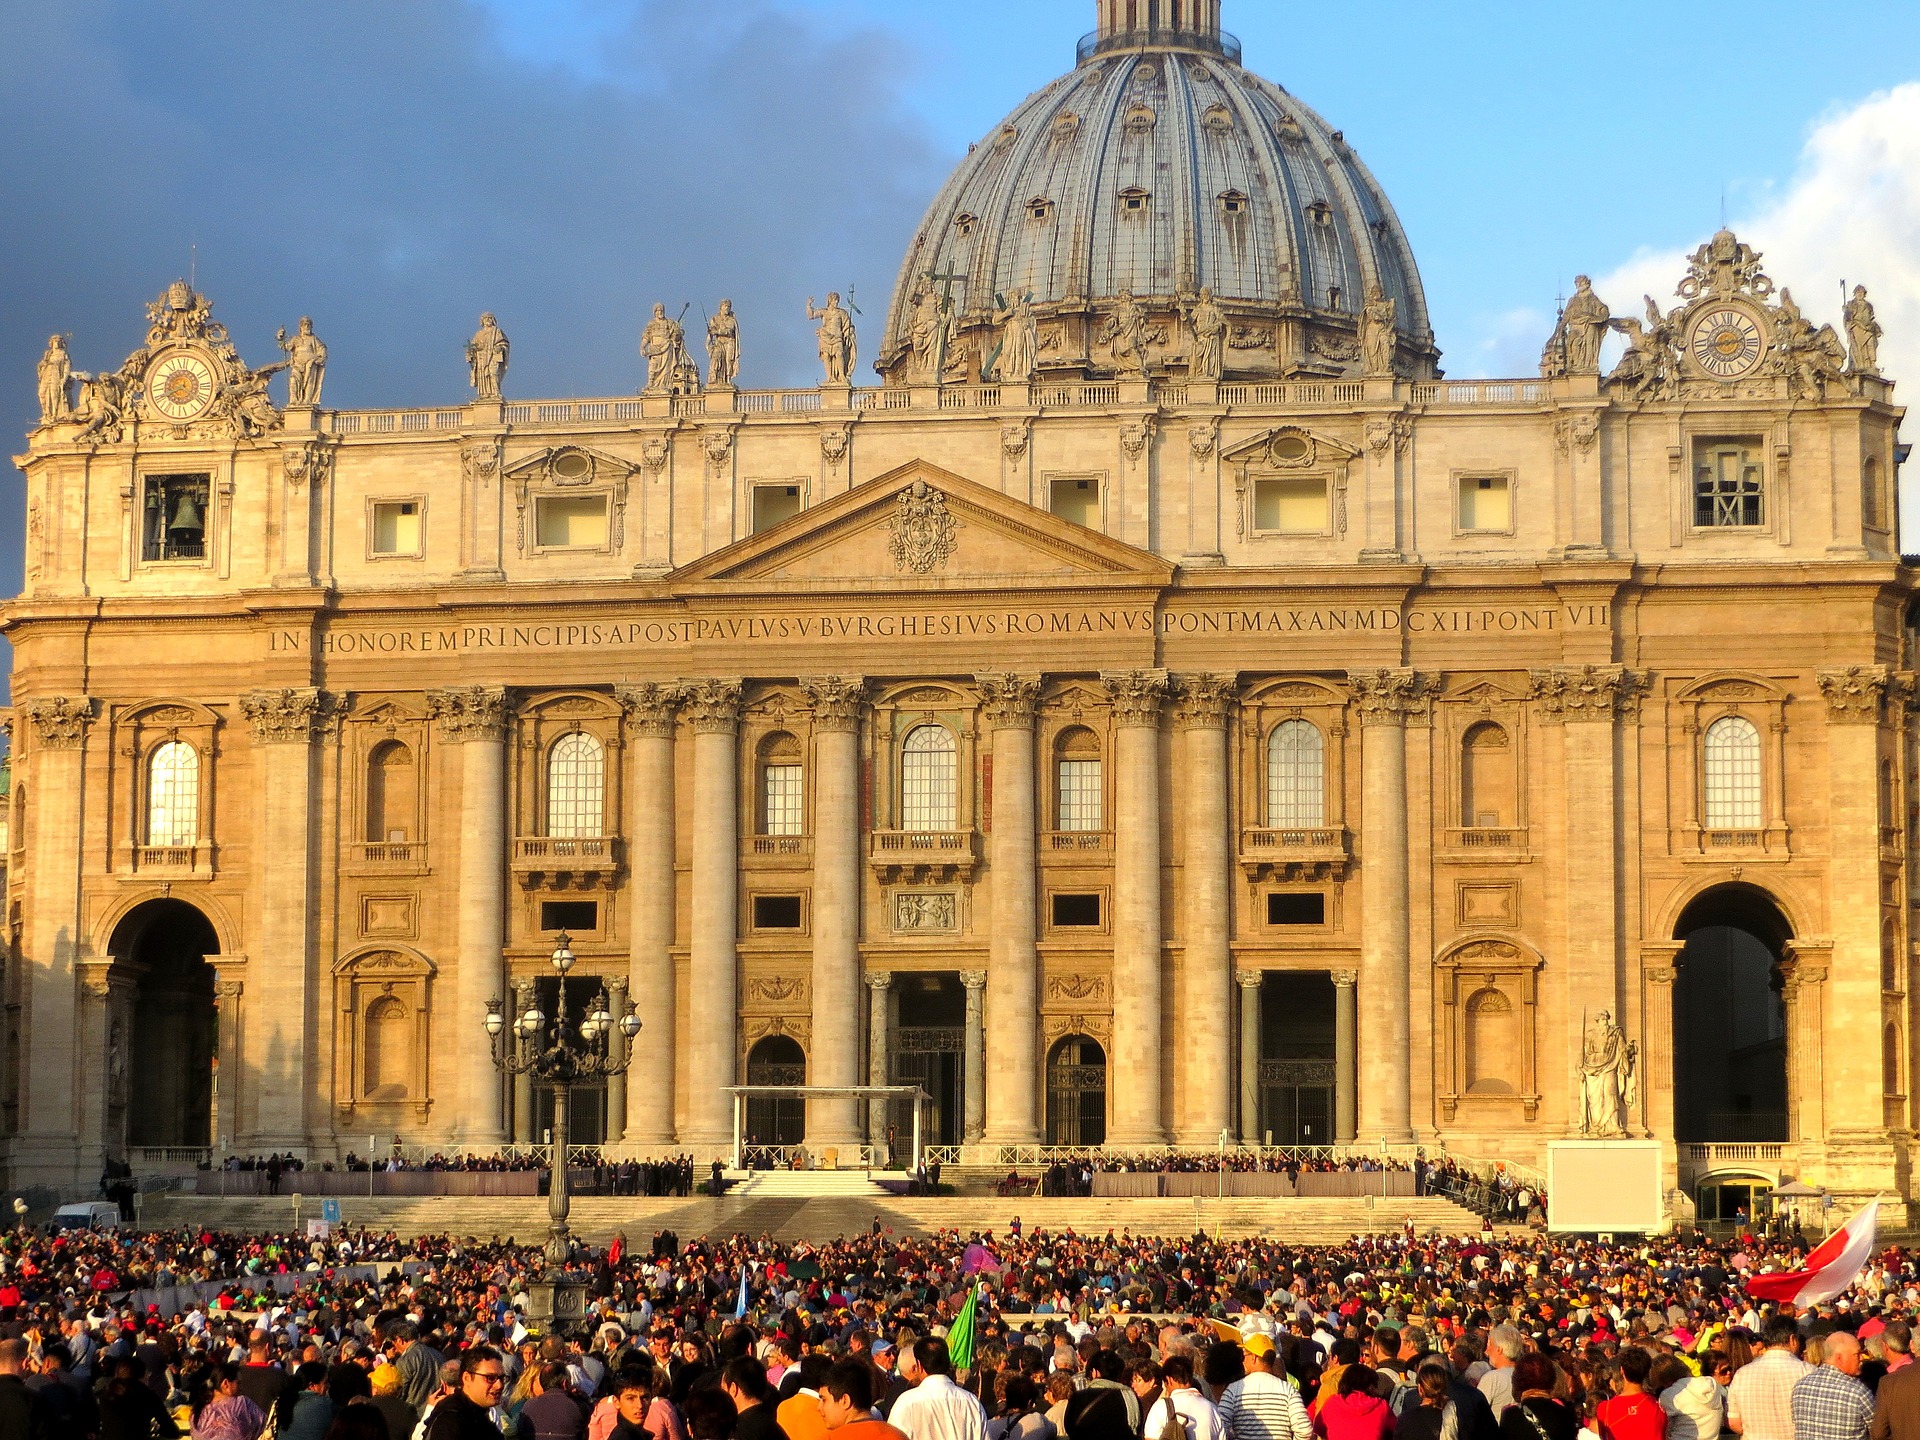 Exploring St. Peter’s Basilica: 5 Practical Commandments